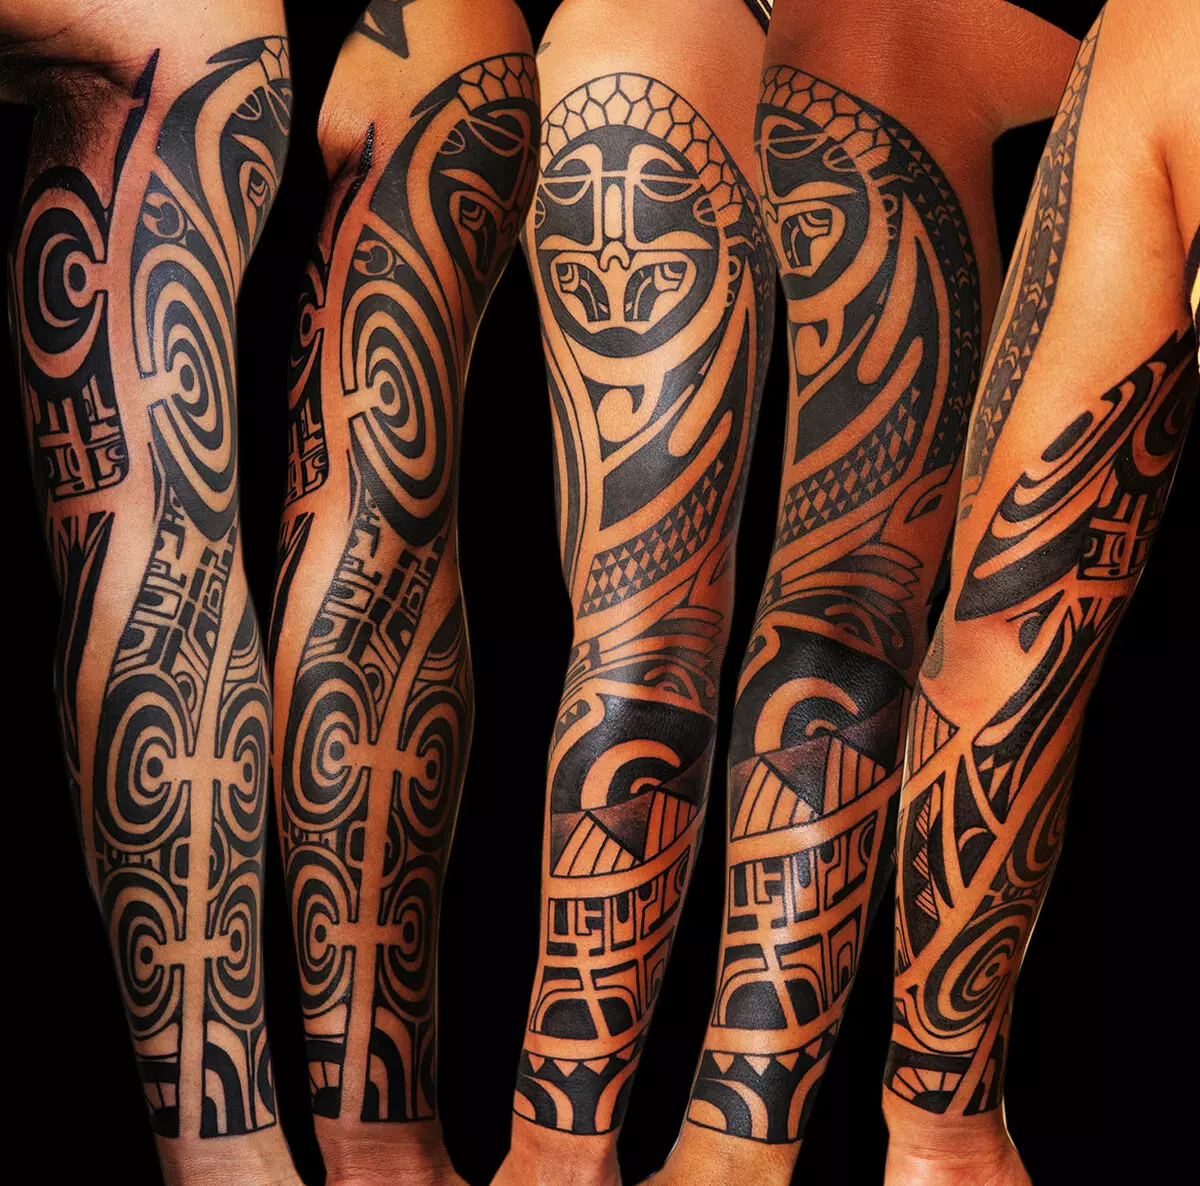 Maya tetovaža: skice tetovaža u stilu plemena Indijanaca. Značenje. Kalendar, uzorci i drugi dodatni crteži 14013_12